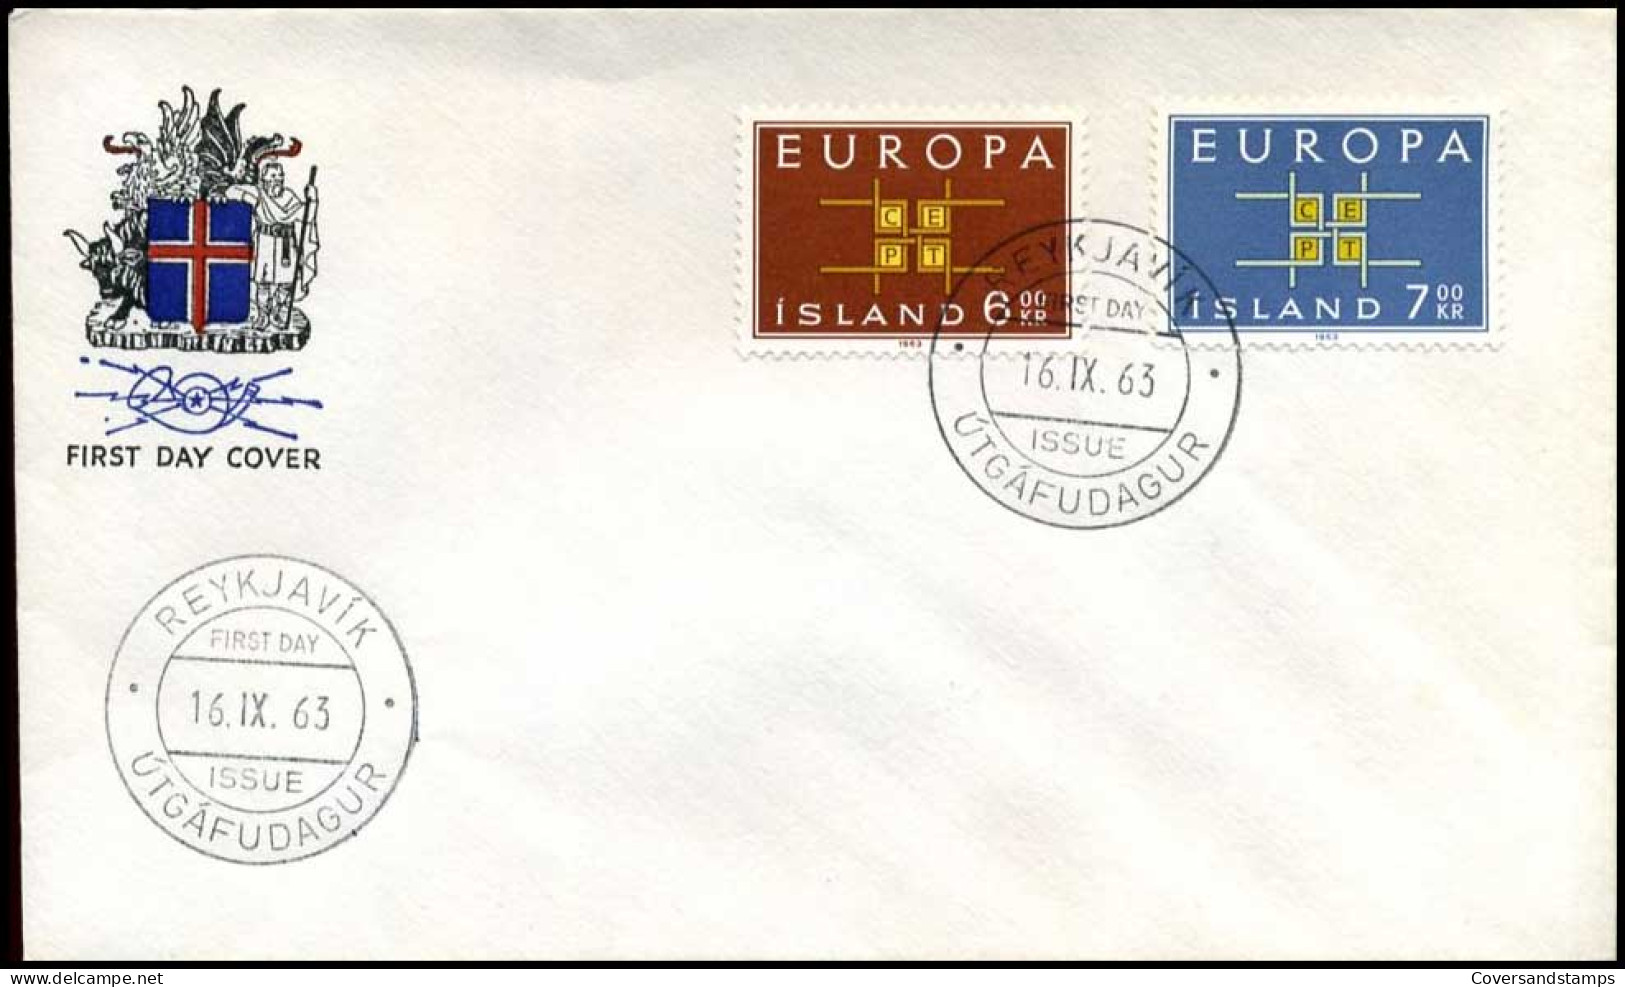  IJsland - FDC - Europa CEPT 1963 - 1963